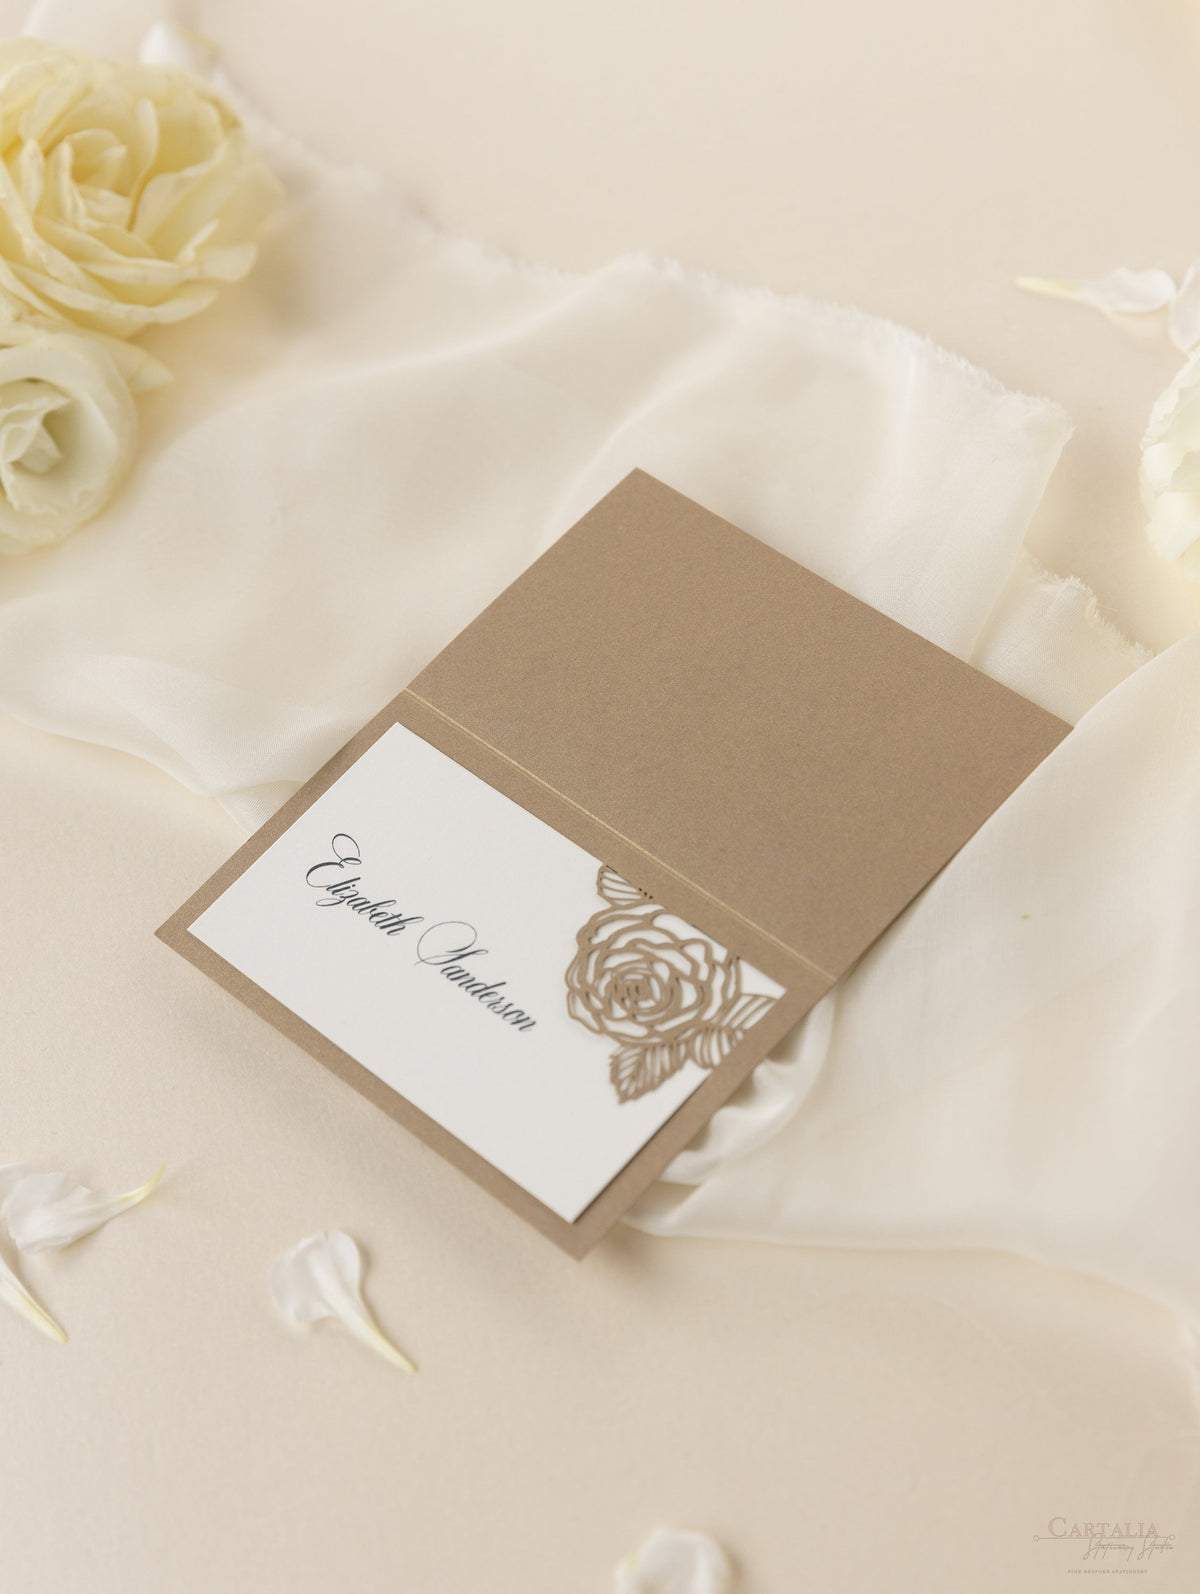 Tarjeta de lugar para boda con corte láser y rosas románticas